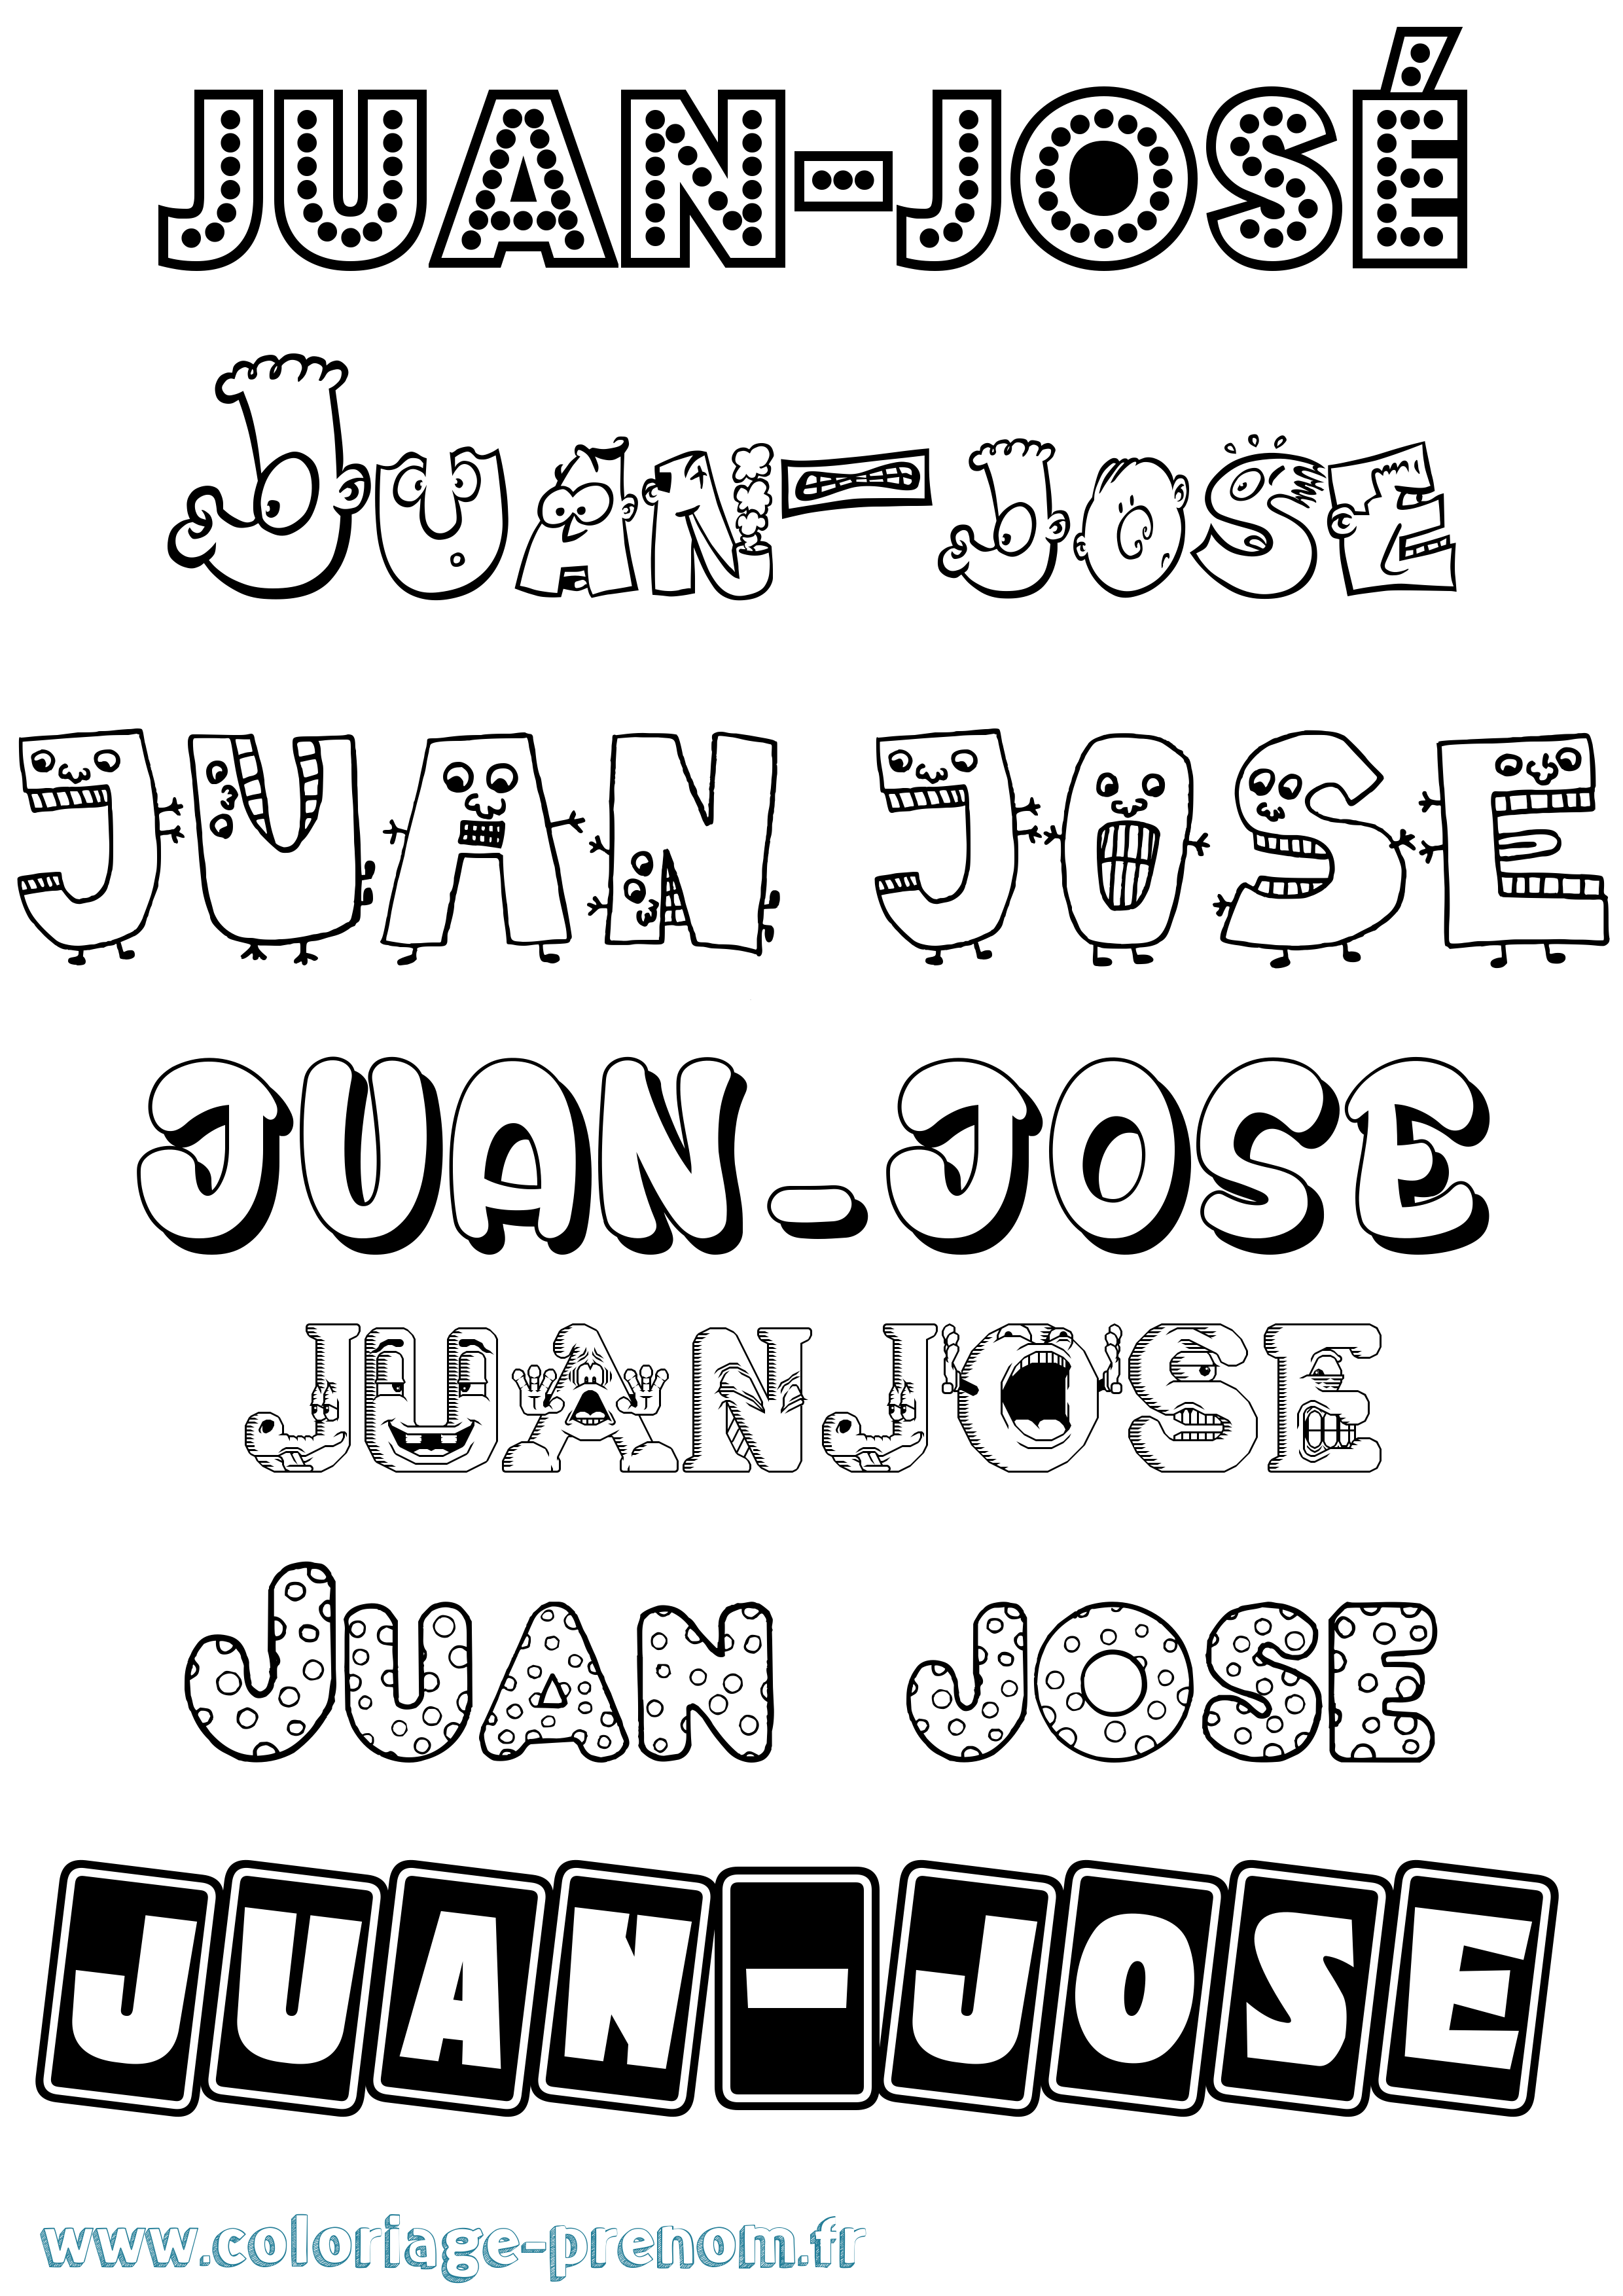 Coloriage prénom Juan-José Fun